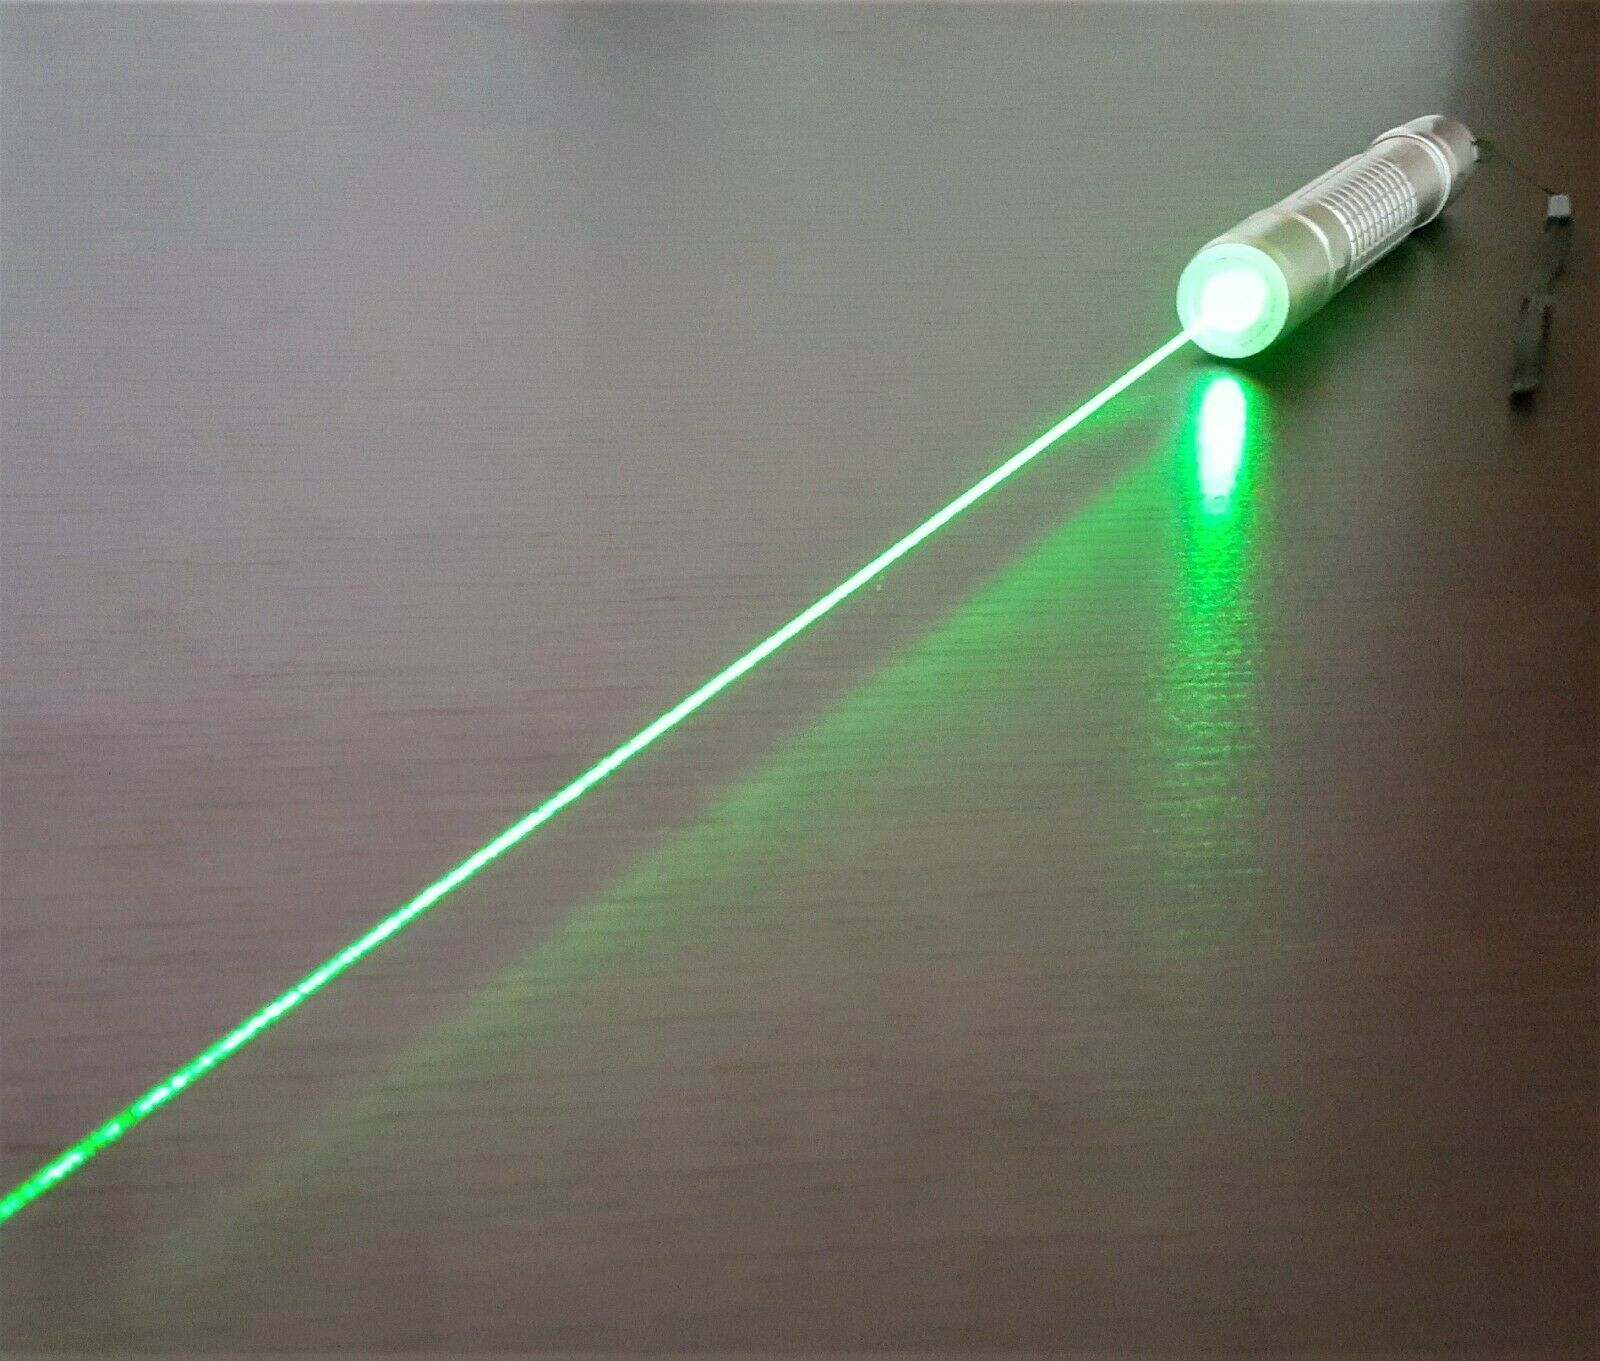 Strong Laser, Laserpointer, Laser Blue, Green Laser